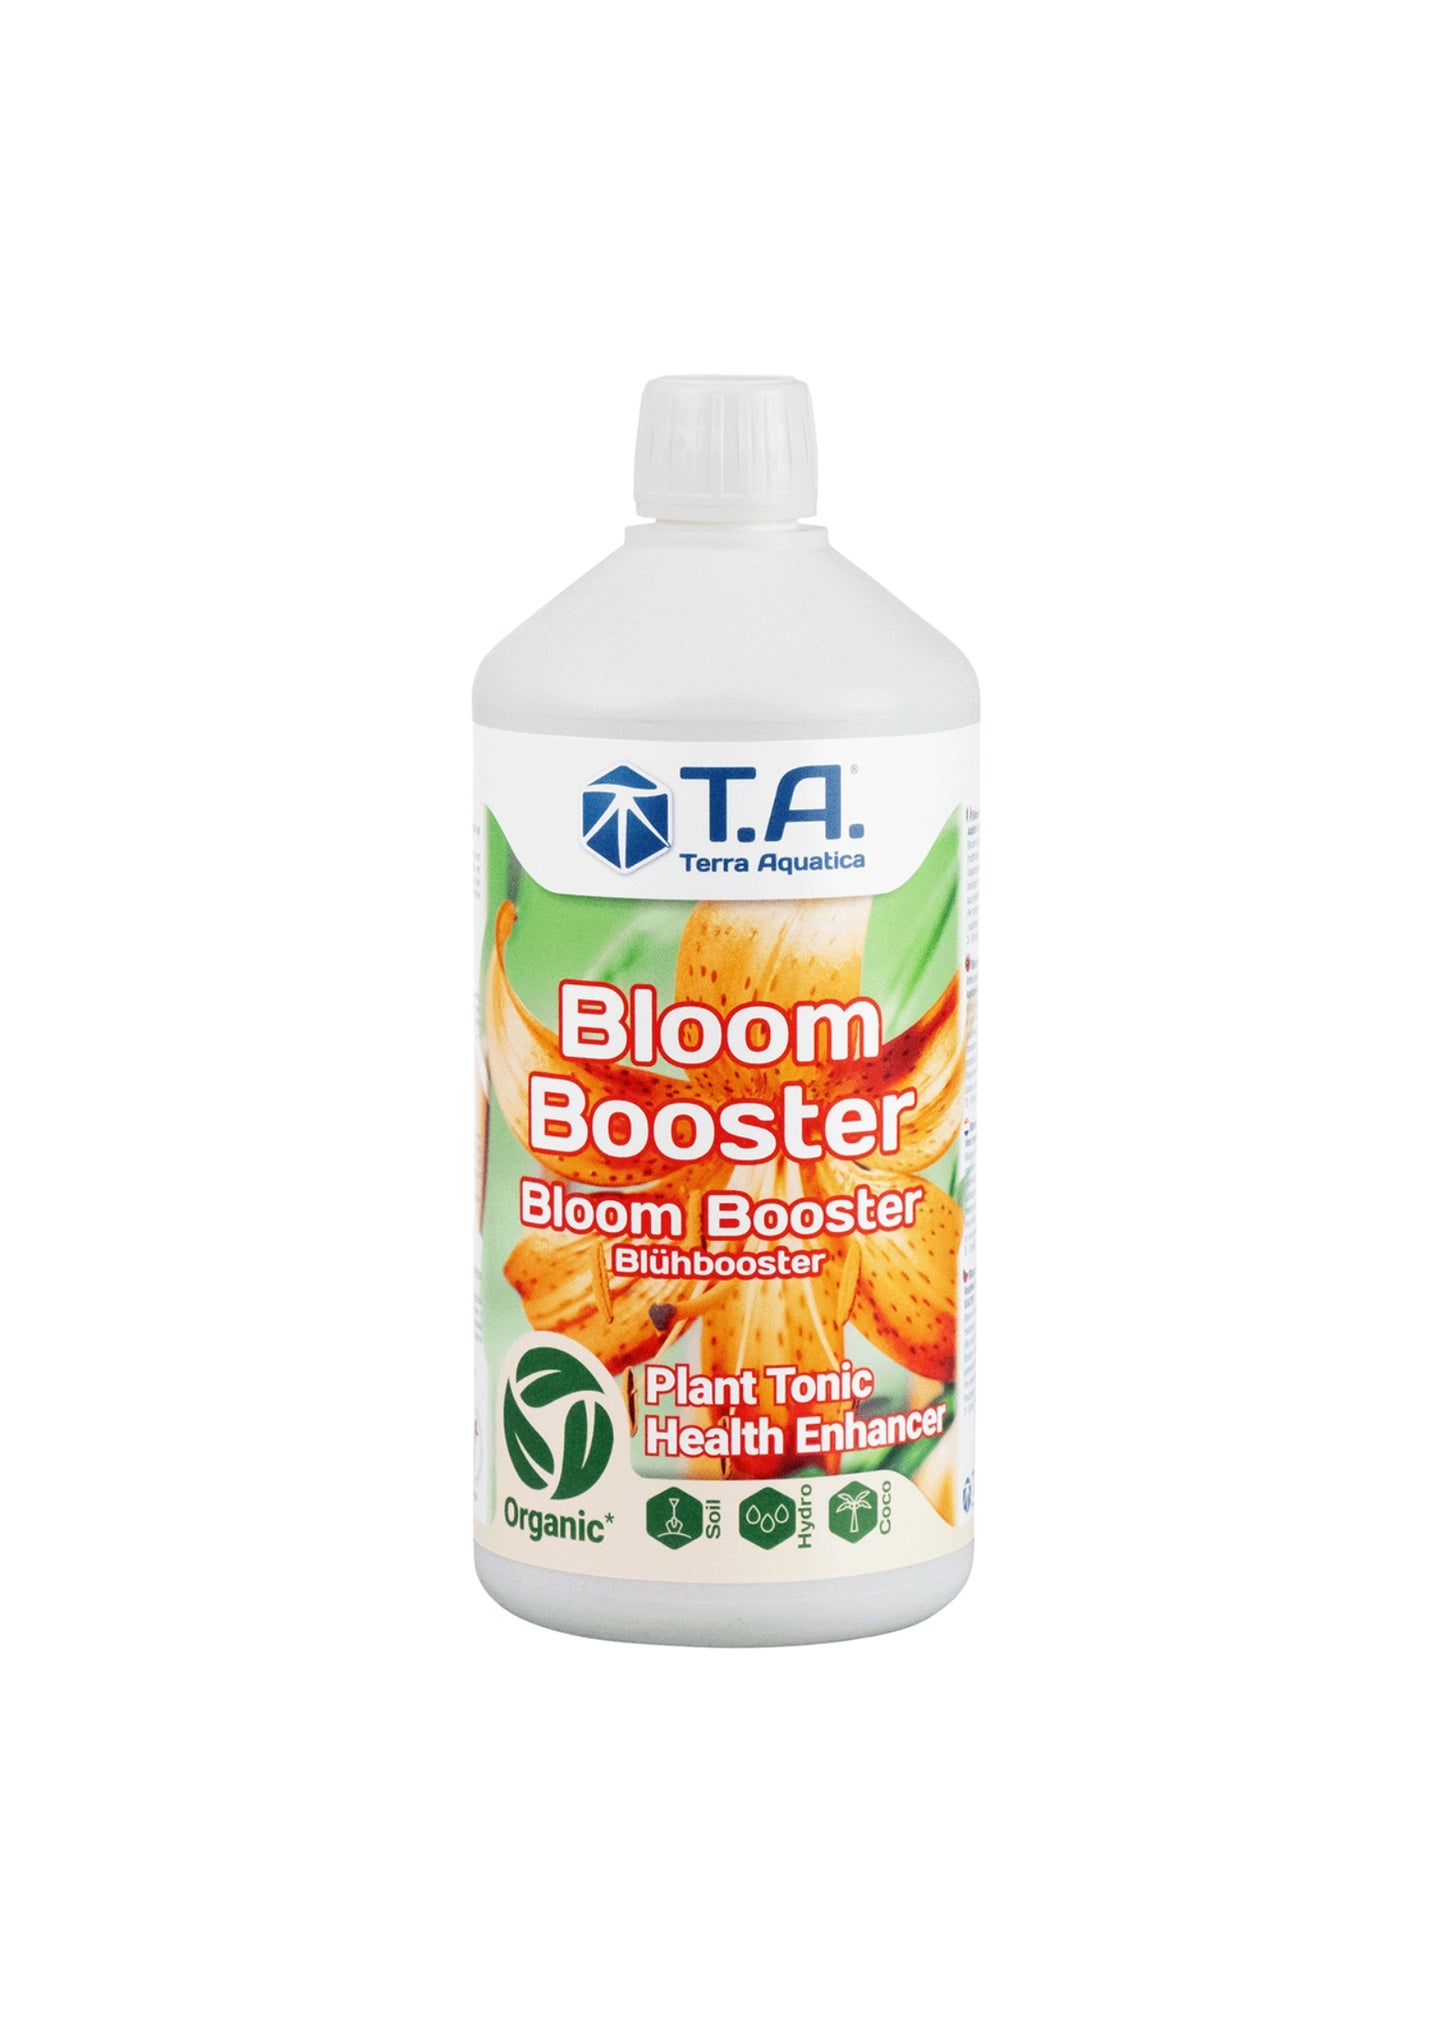 Terra Aquatica Bloom Booster 1 Liter